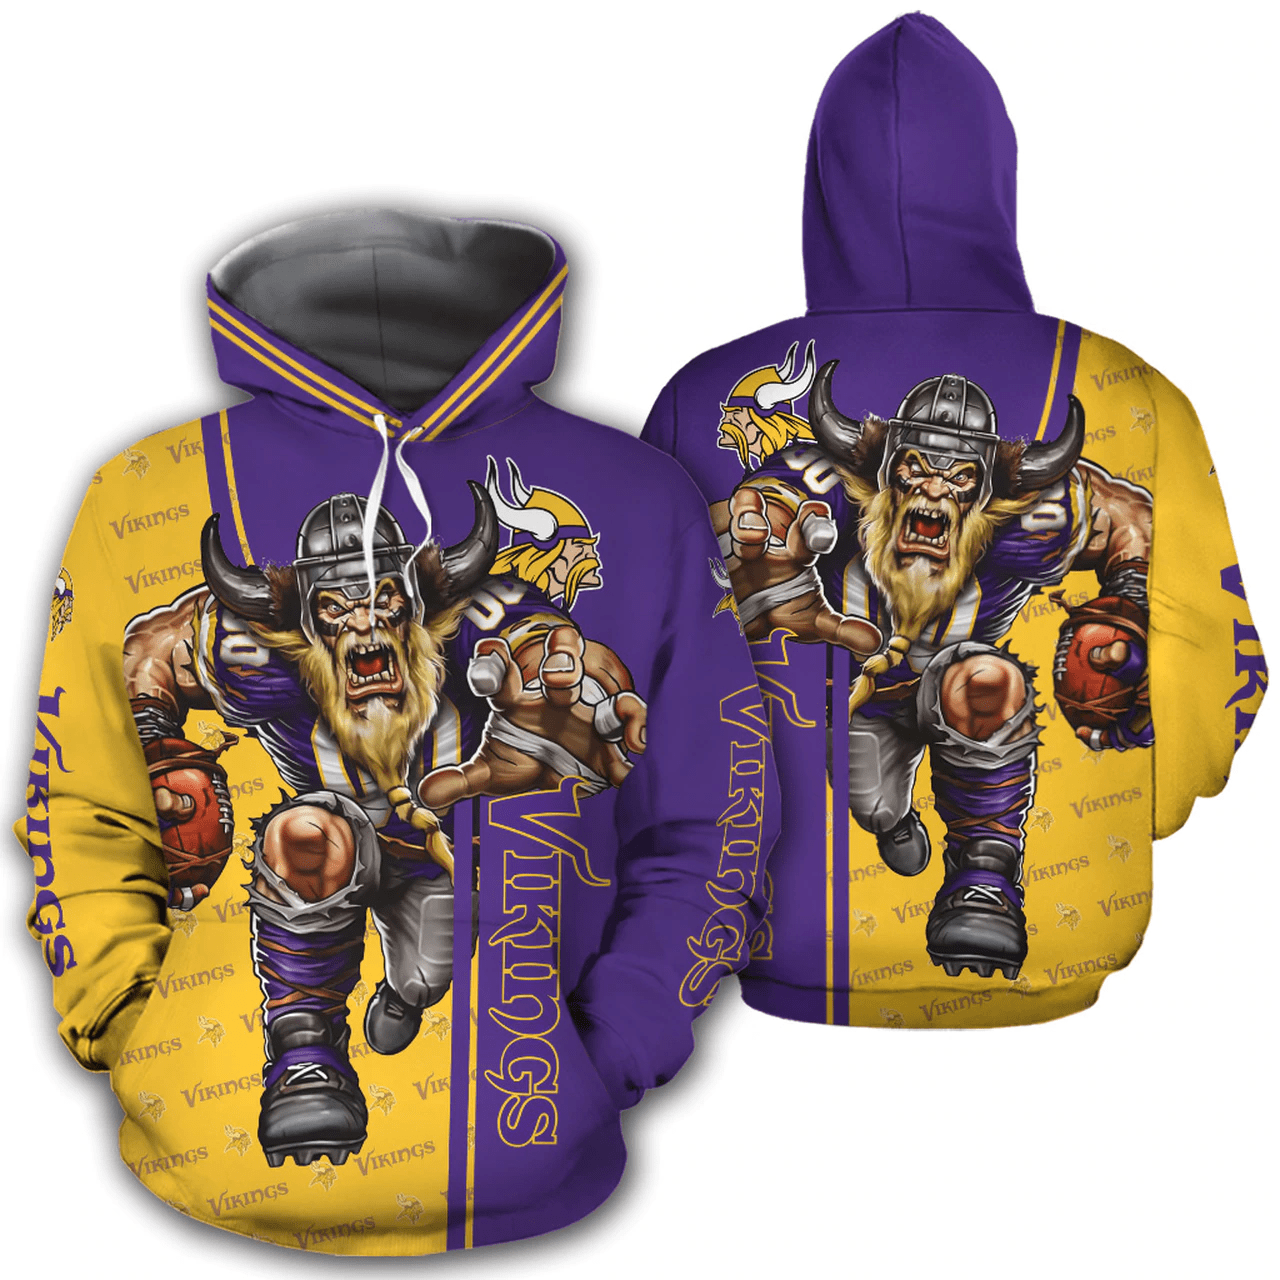 Minnesota Vikings Hoodie 3D Mascot design gift for fans